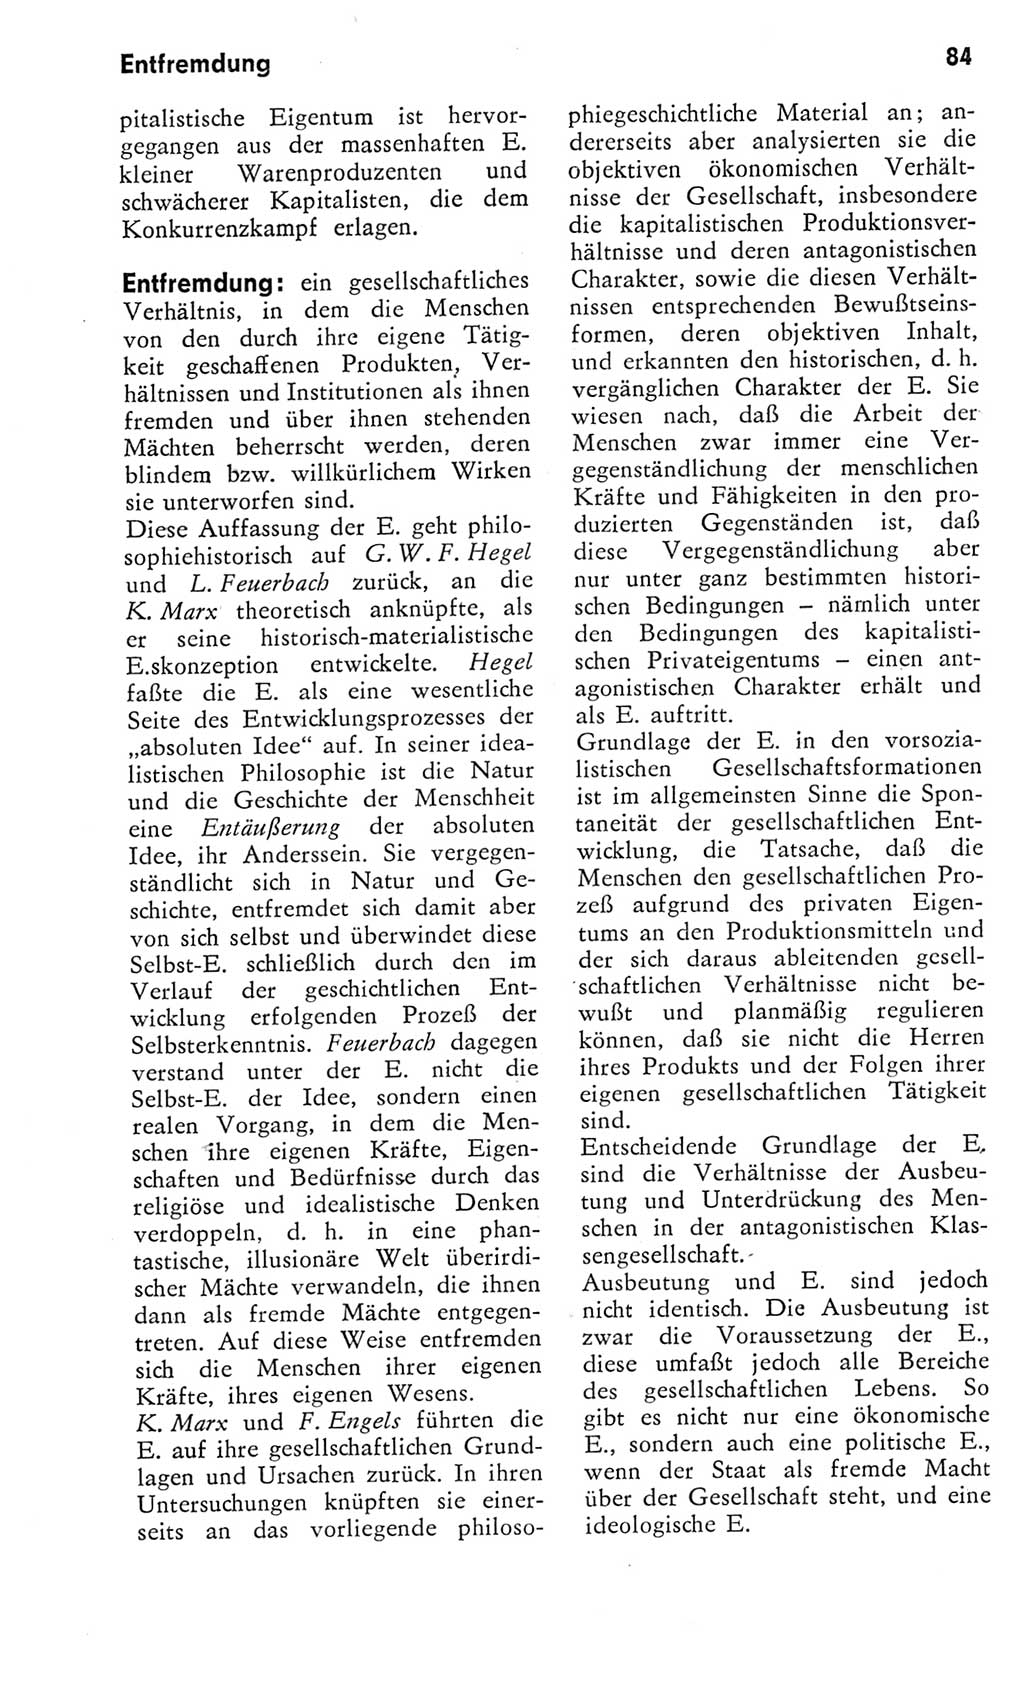 Kleines Wörterbuch der marxistisch-leninistischen Philosophie [Deutsche Demokratische Republik (DDR)] 1975, Seite 84 (Kl. Wb. ML Phil. DDR 1975, S. 84)